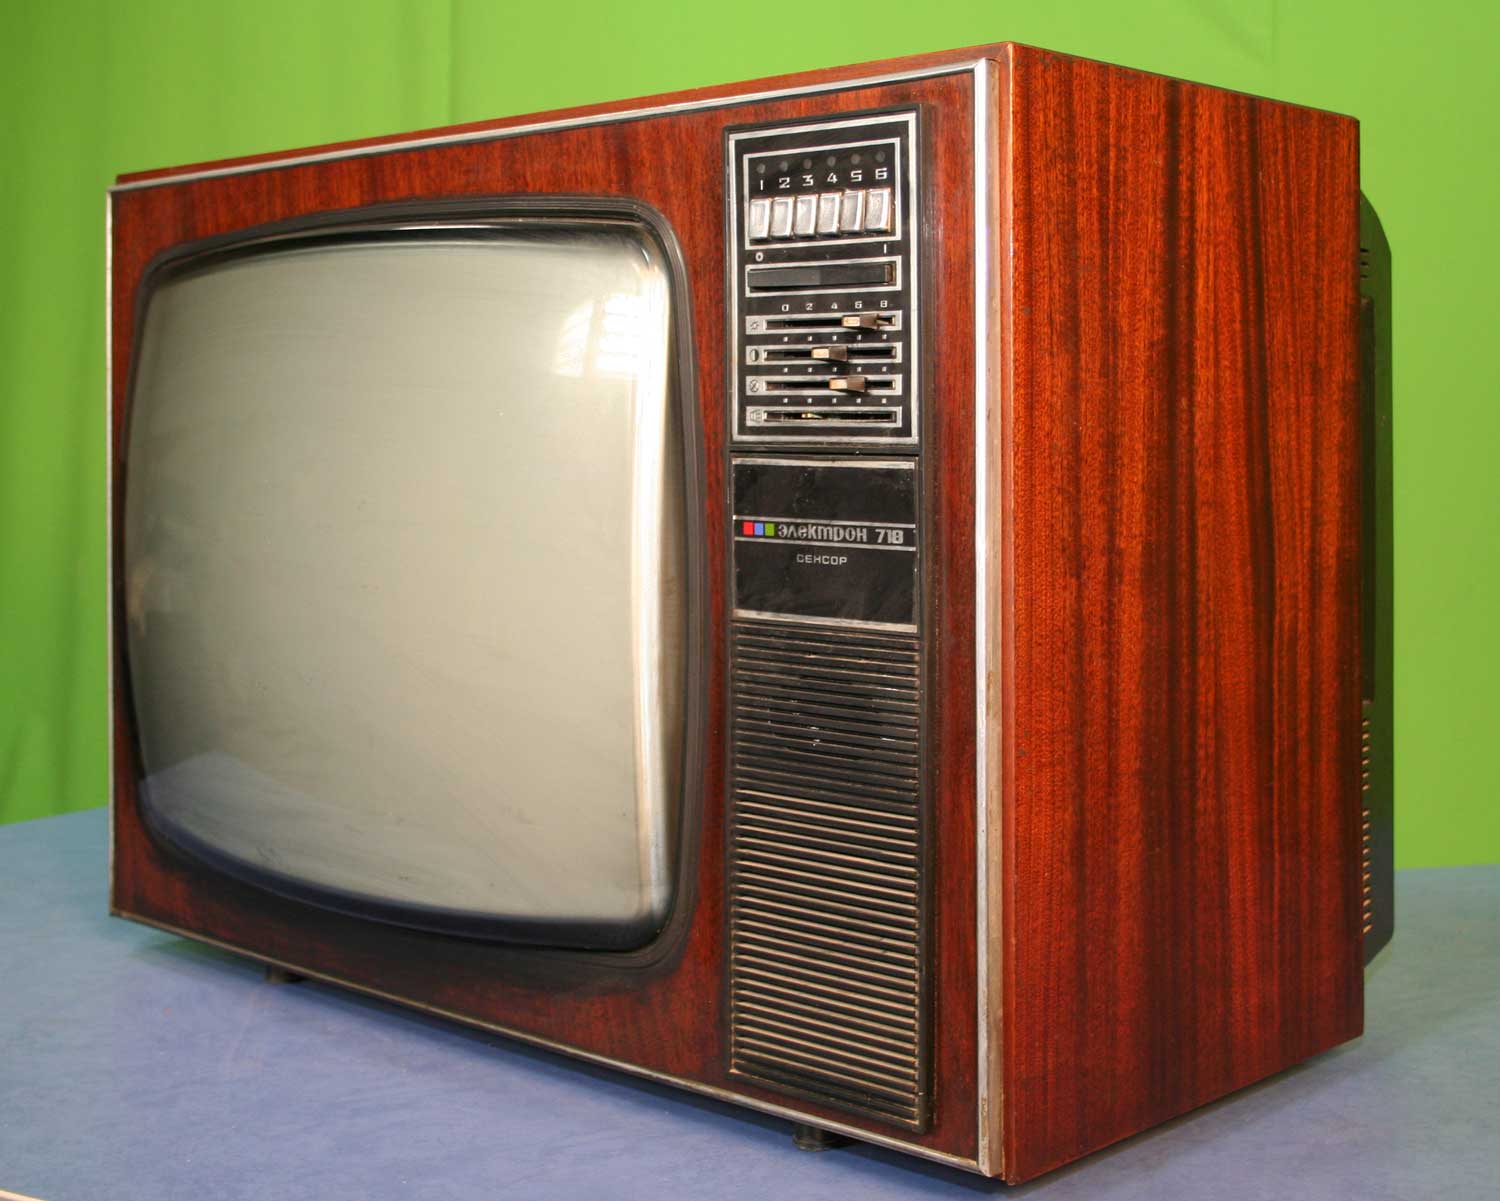 Советский телевизор купить. Цветной телевизор электрон 718. Телевизор Рубин 718. Ламповый телевизор электрон 718. Электрон 718 телевизор СССР цветной.